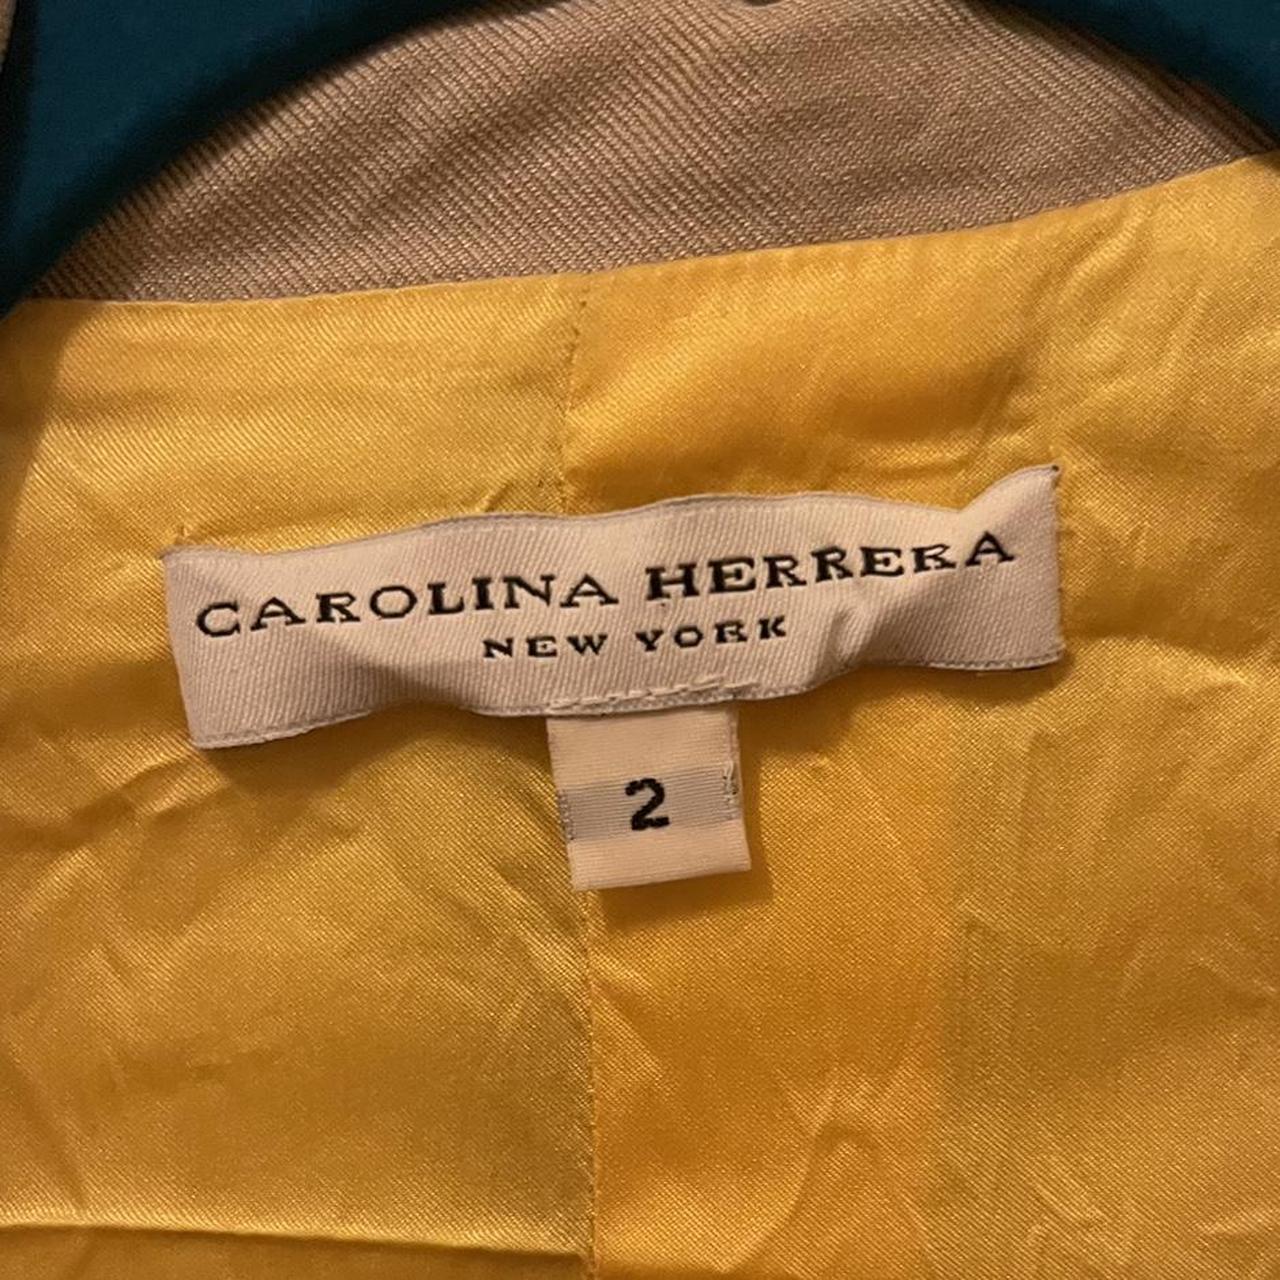 Carolina Herrera Women's Tan and Cream Top (2)